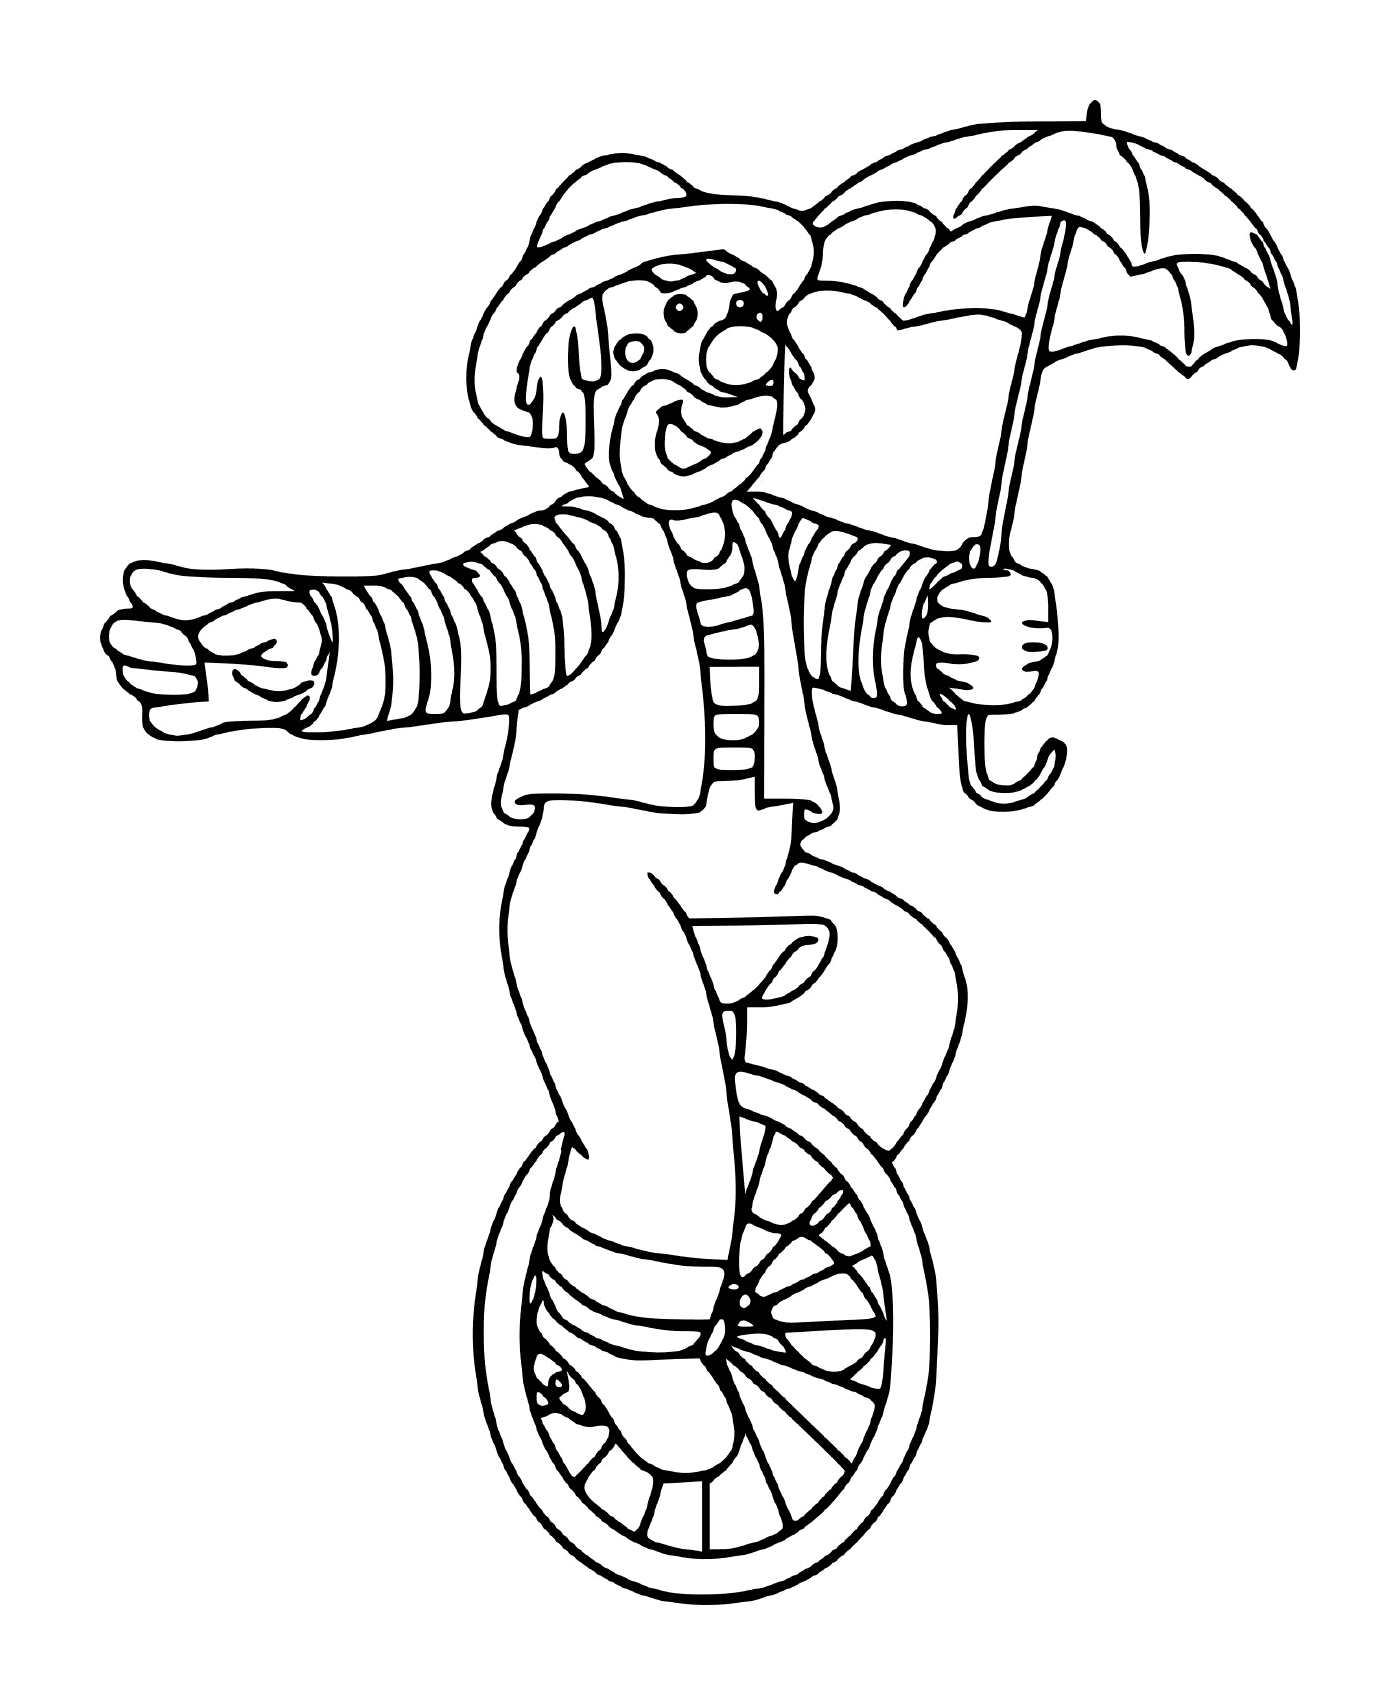  Palhaço do circo equilibrado em uma roda com um guarda-chuva 